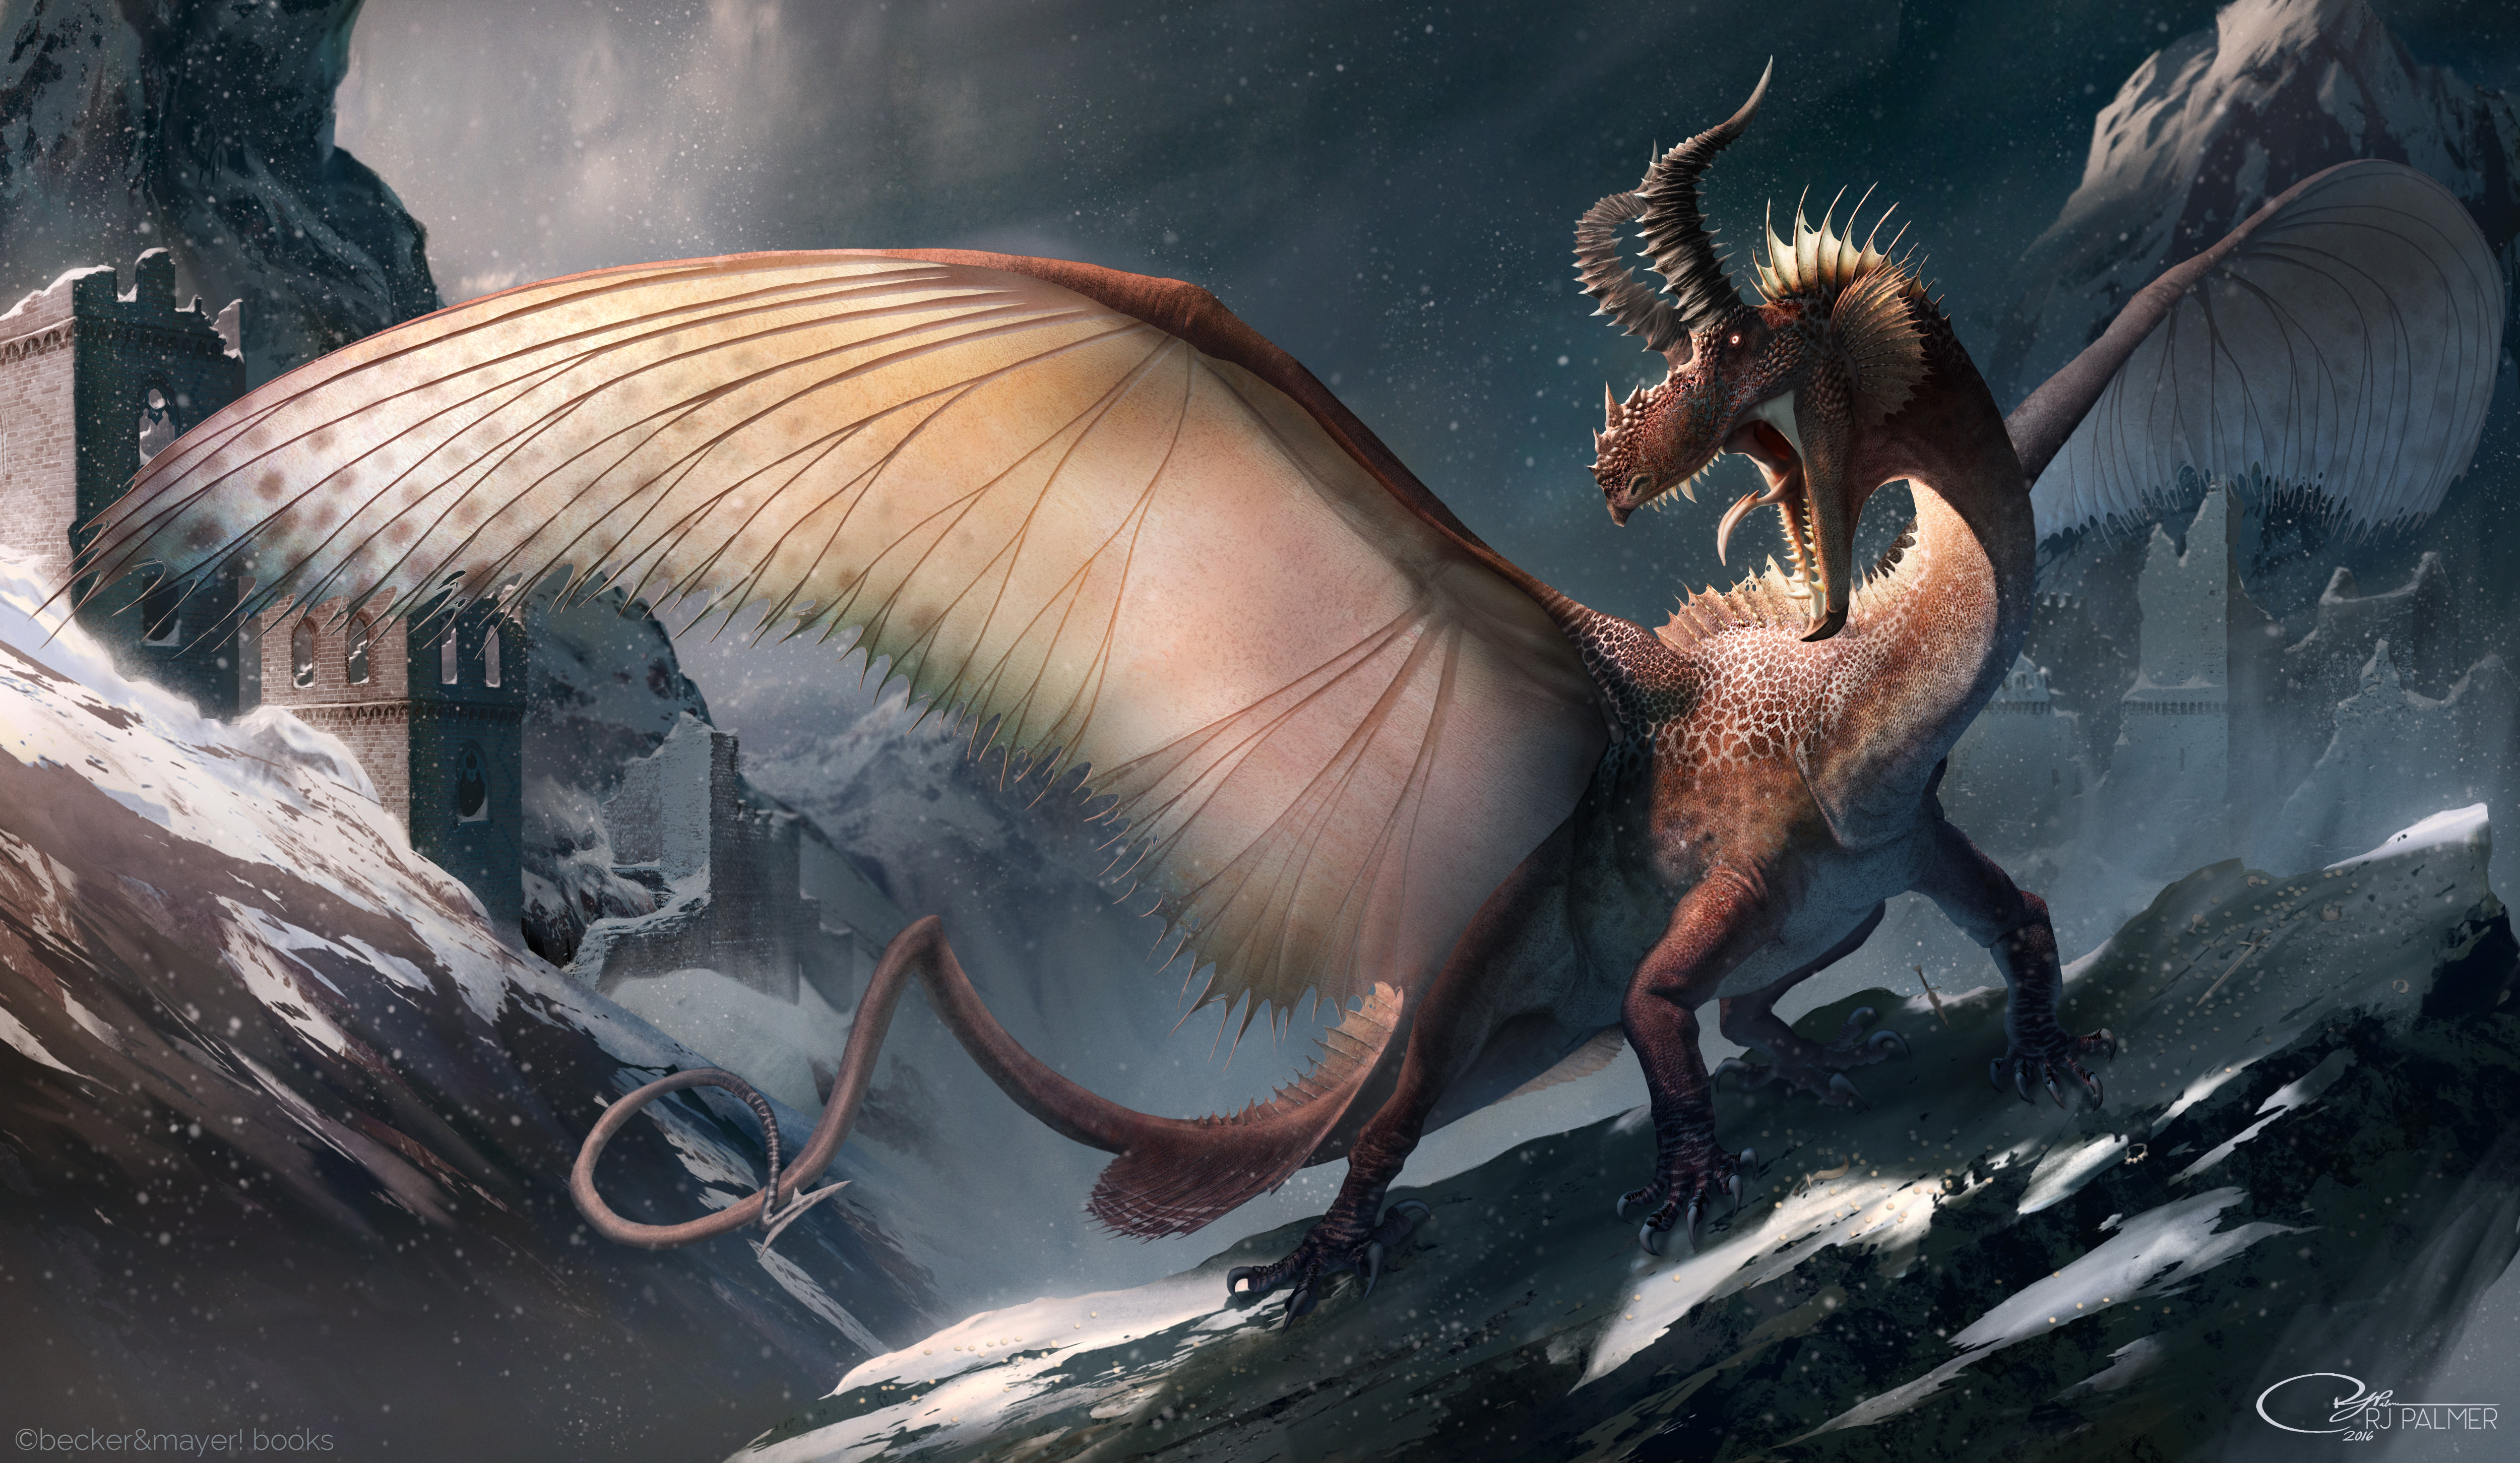 European Dragon by RJ Palmer